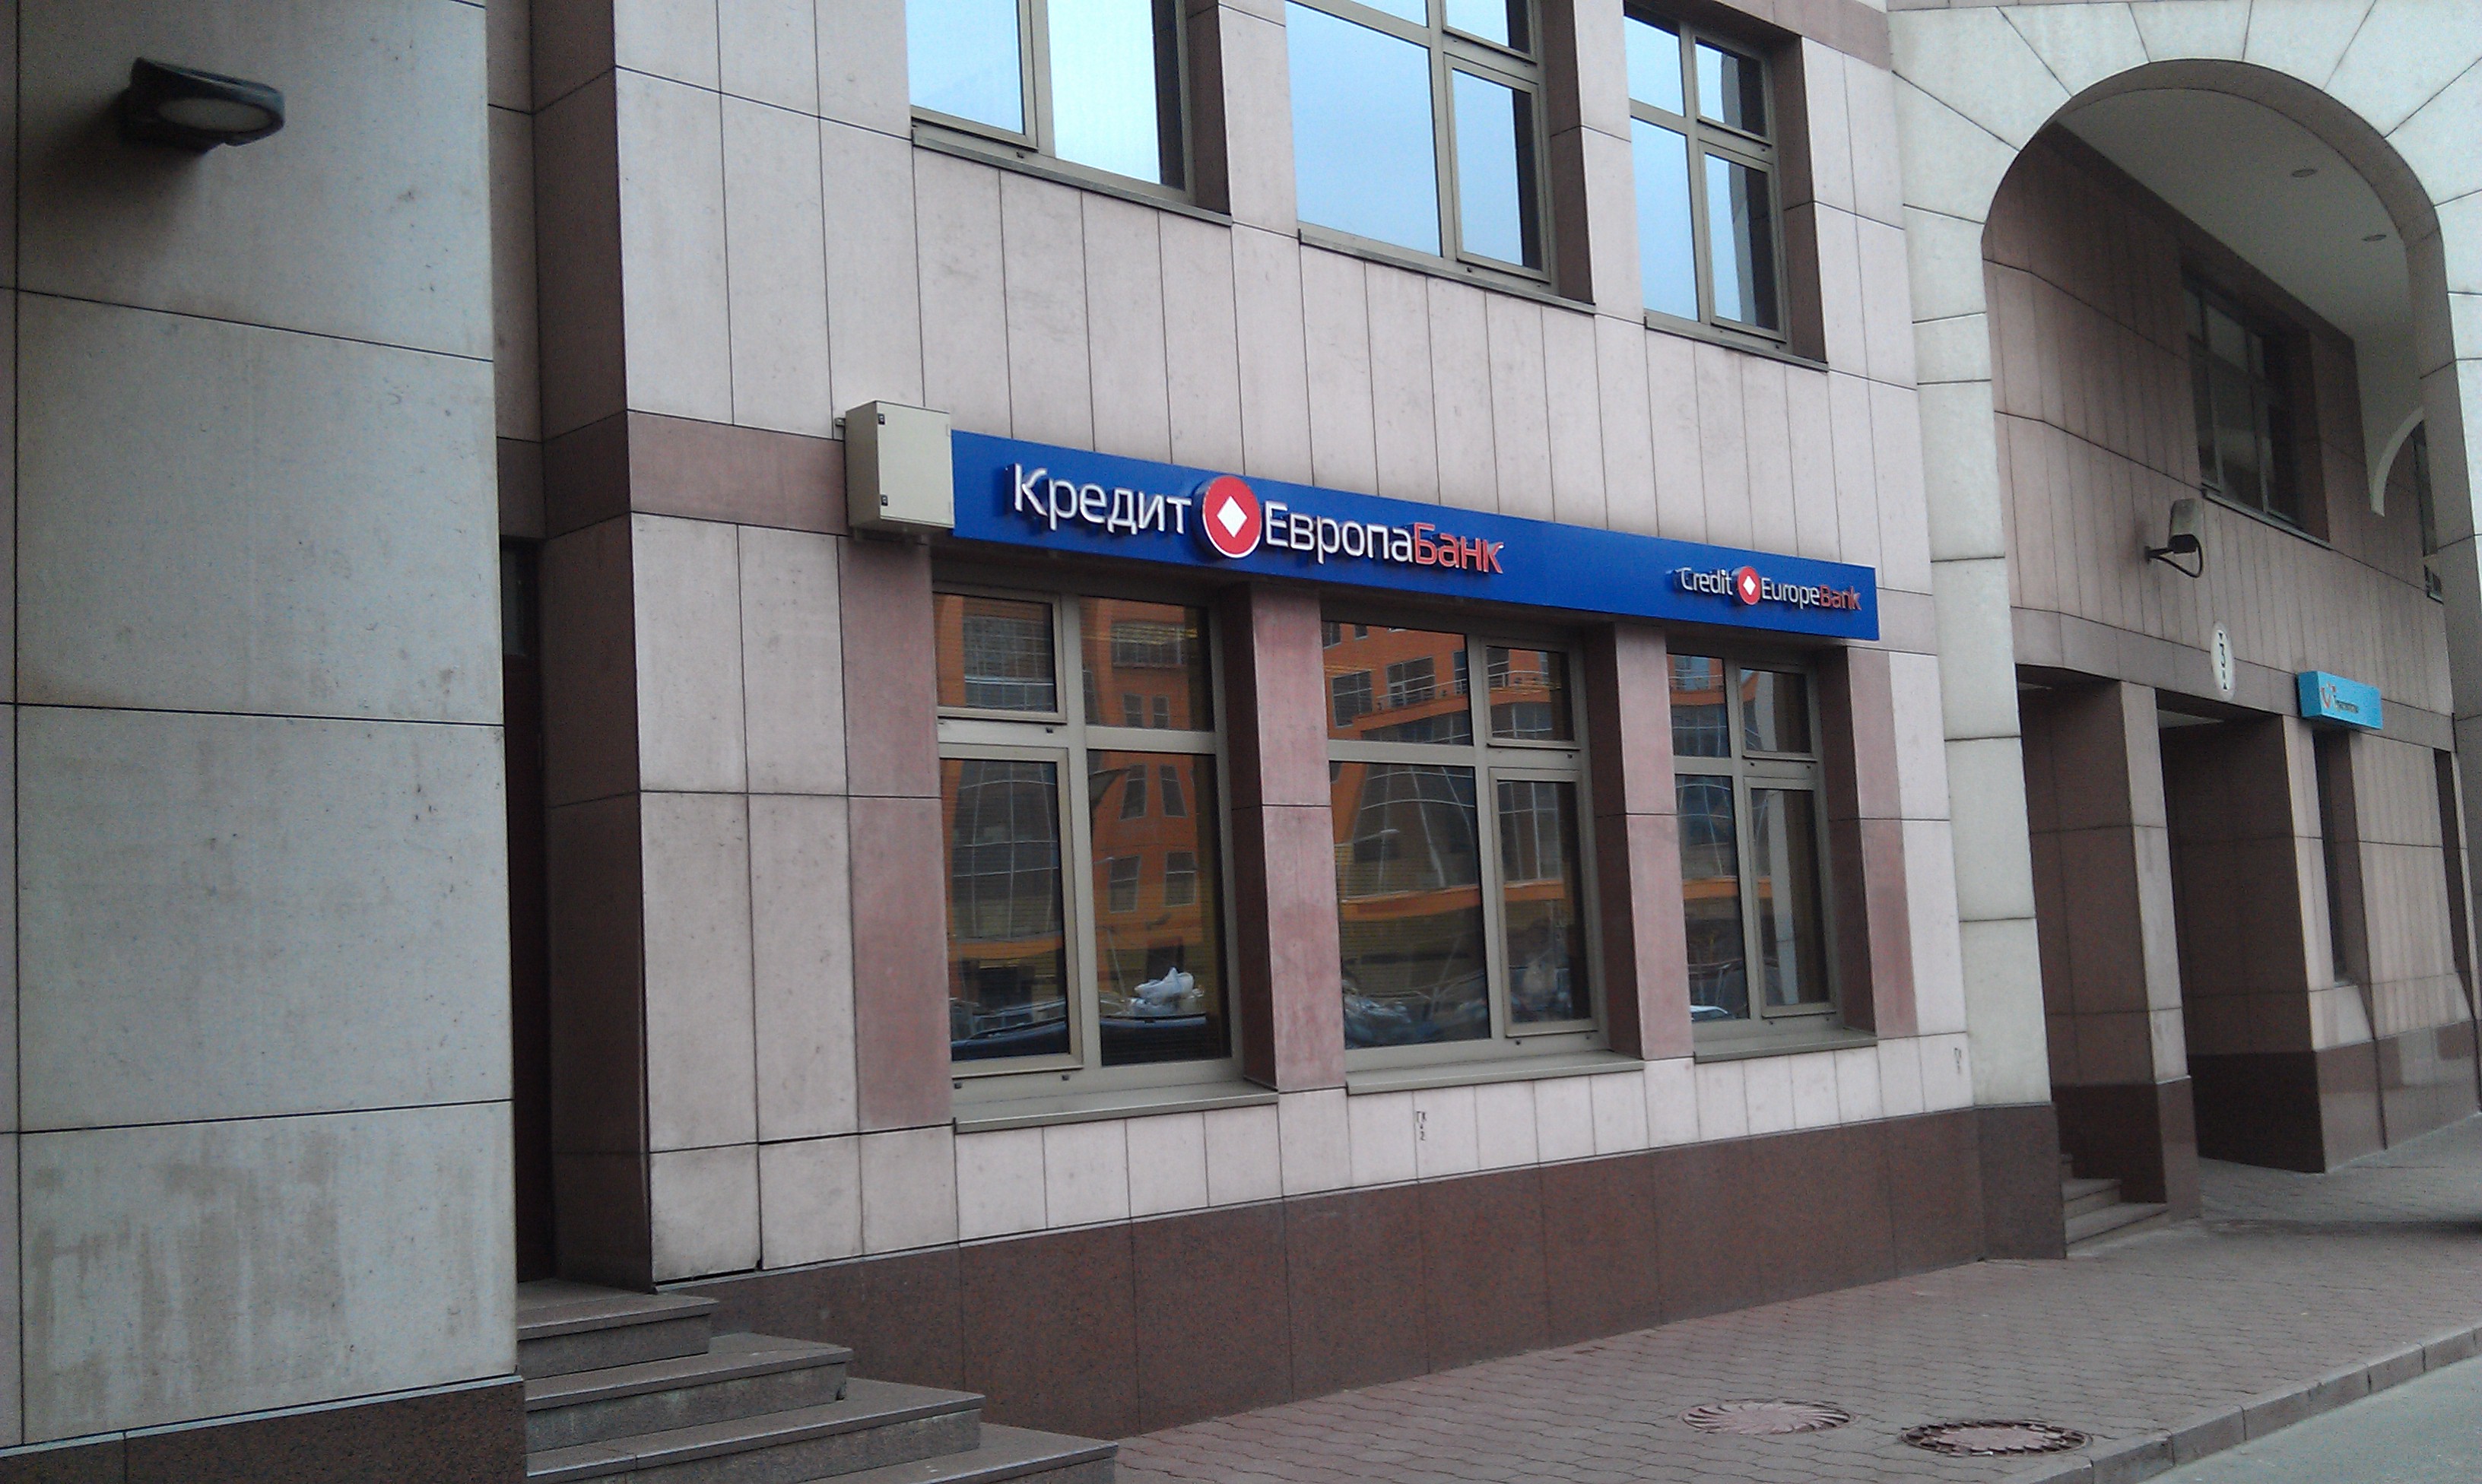 Европа банк фото. Европа банк. Банк Новосибирск. Кредит Европа банк фото. Отделение банка кредит Европа.